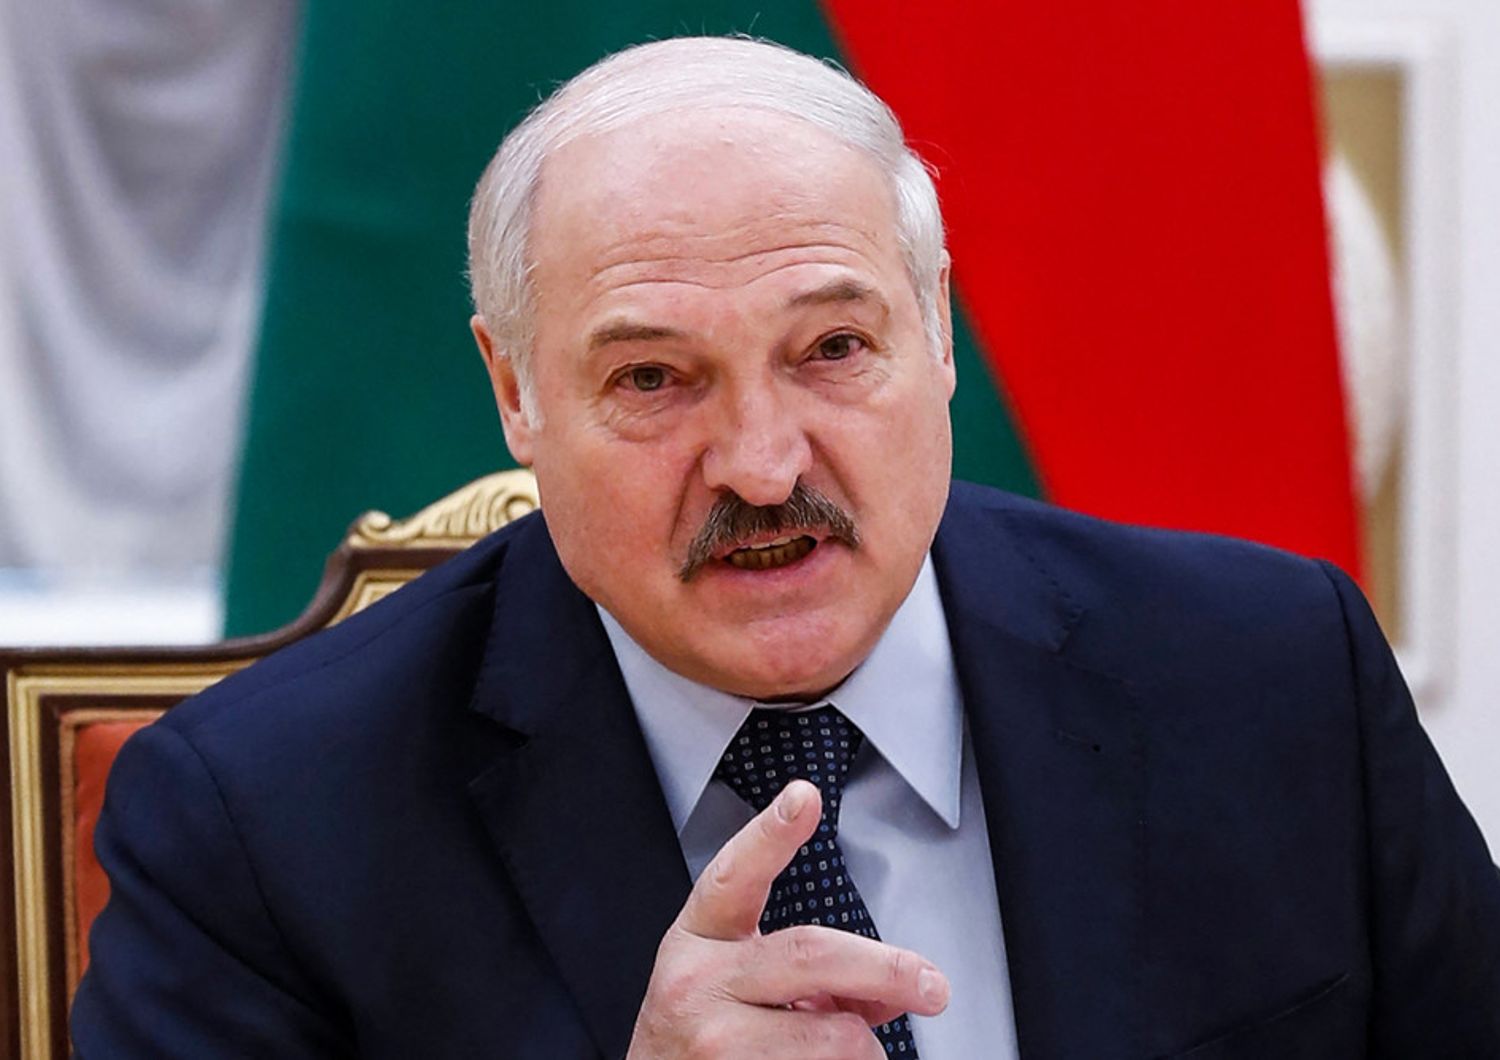 bielorussia ambasciatore ue&nbsp;